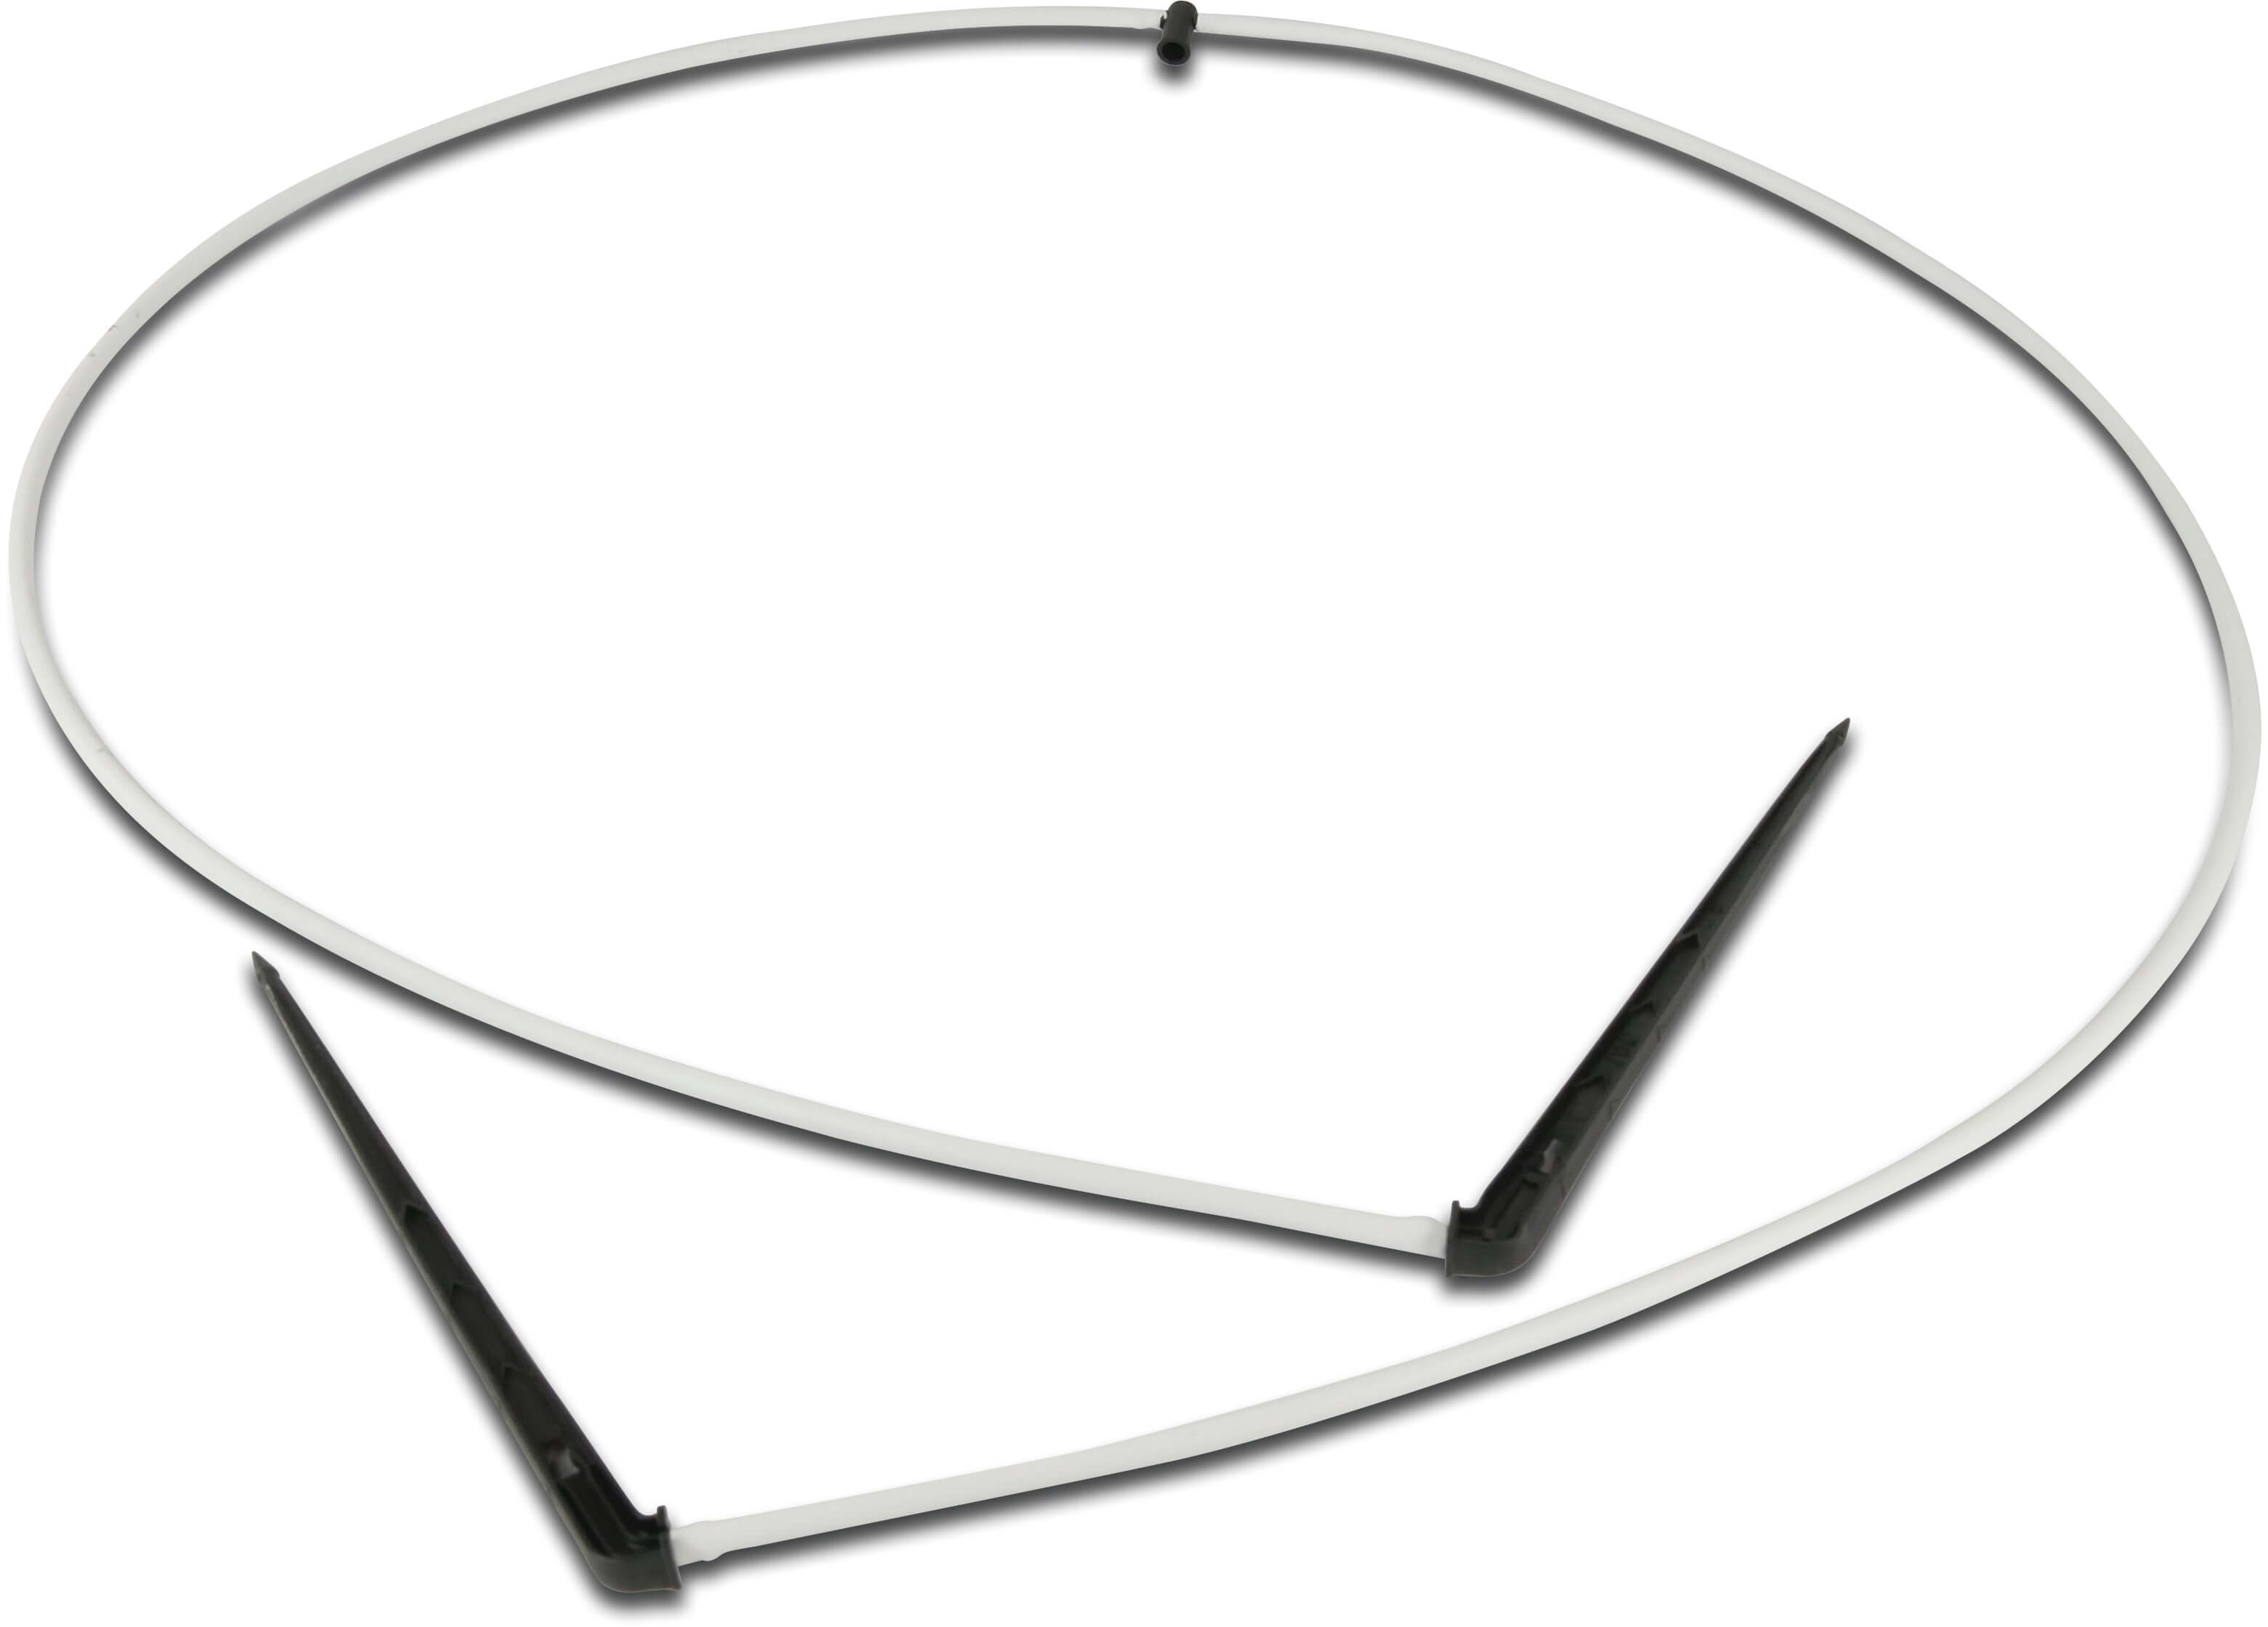 NaanDanJain 2-drożny rozdzielacz z PE + emiter patykowy prosty z labiryntem tworzywo sztuczne taper F 50cm czarno/biały type Click Tif, tubing with angle labyrinth stake